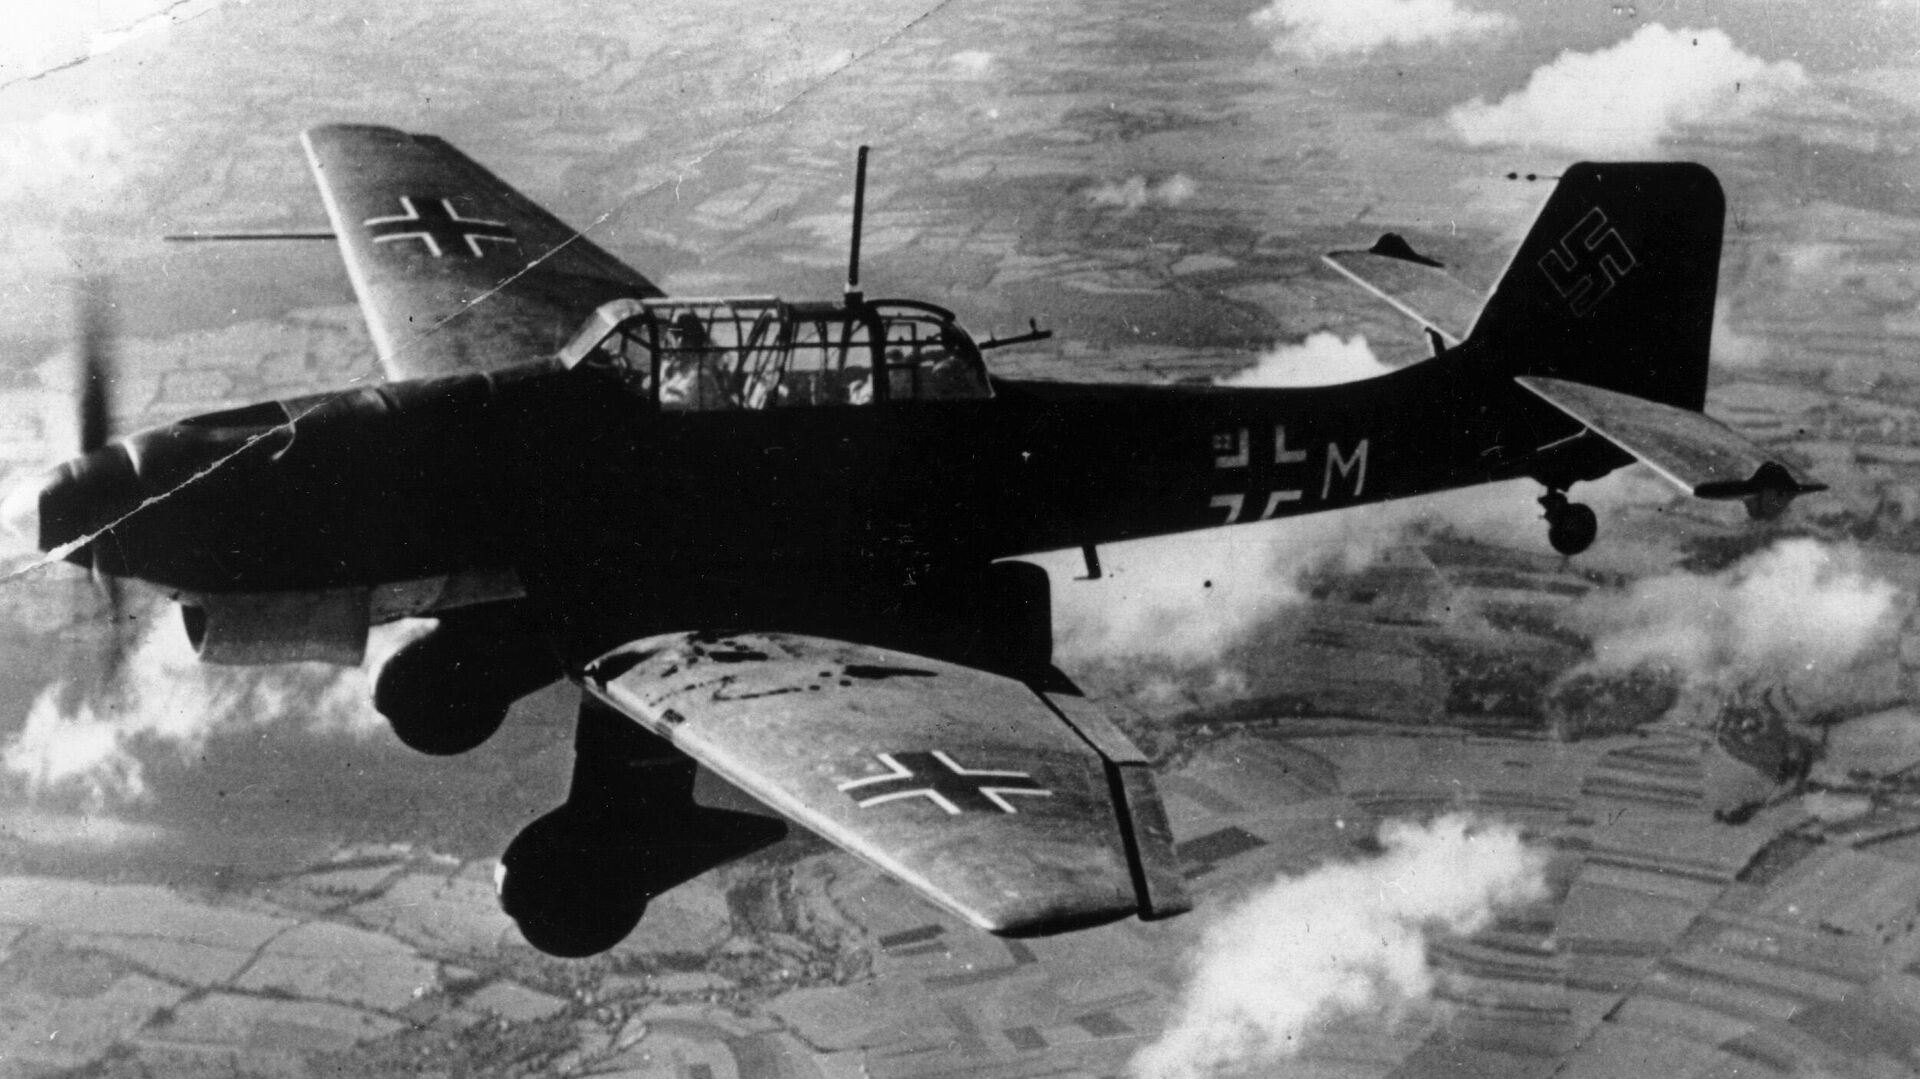 Vokietijos bombonešis Ju -87 Stuka - Sputnik Lietuva, 1920, 10.10.2021